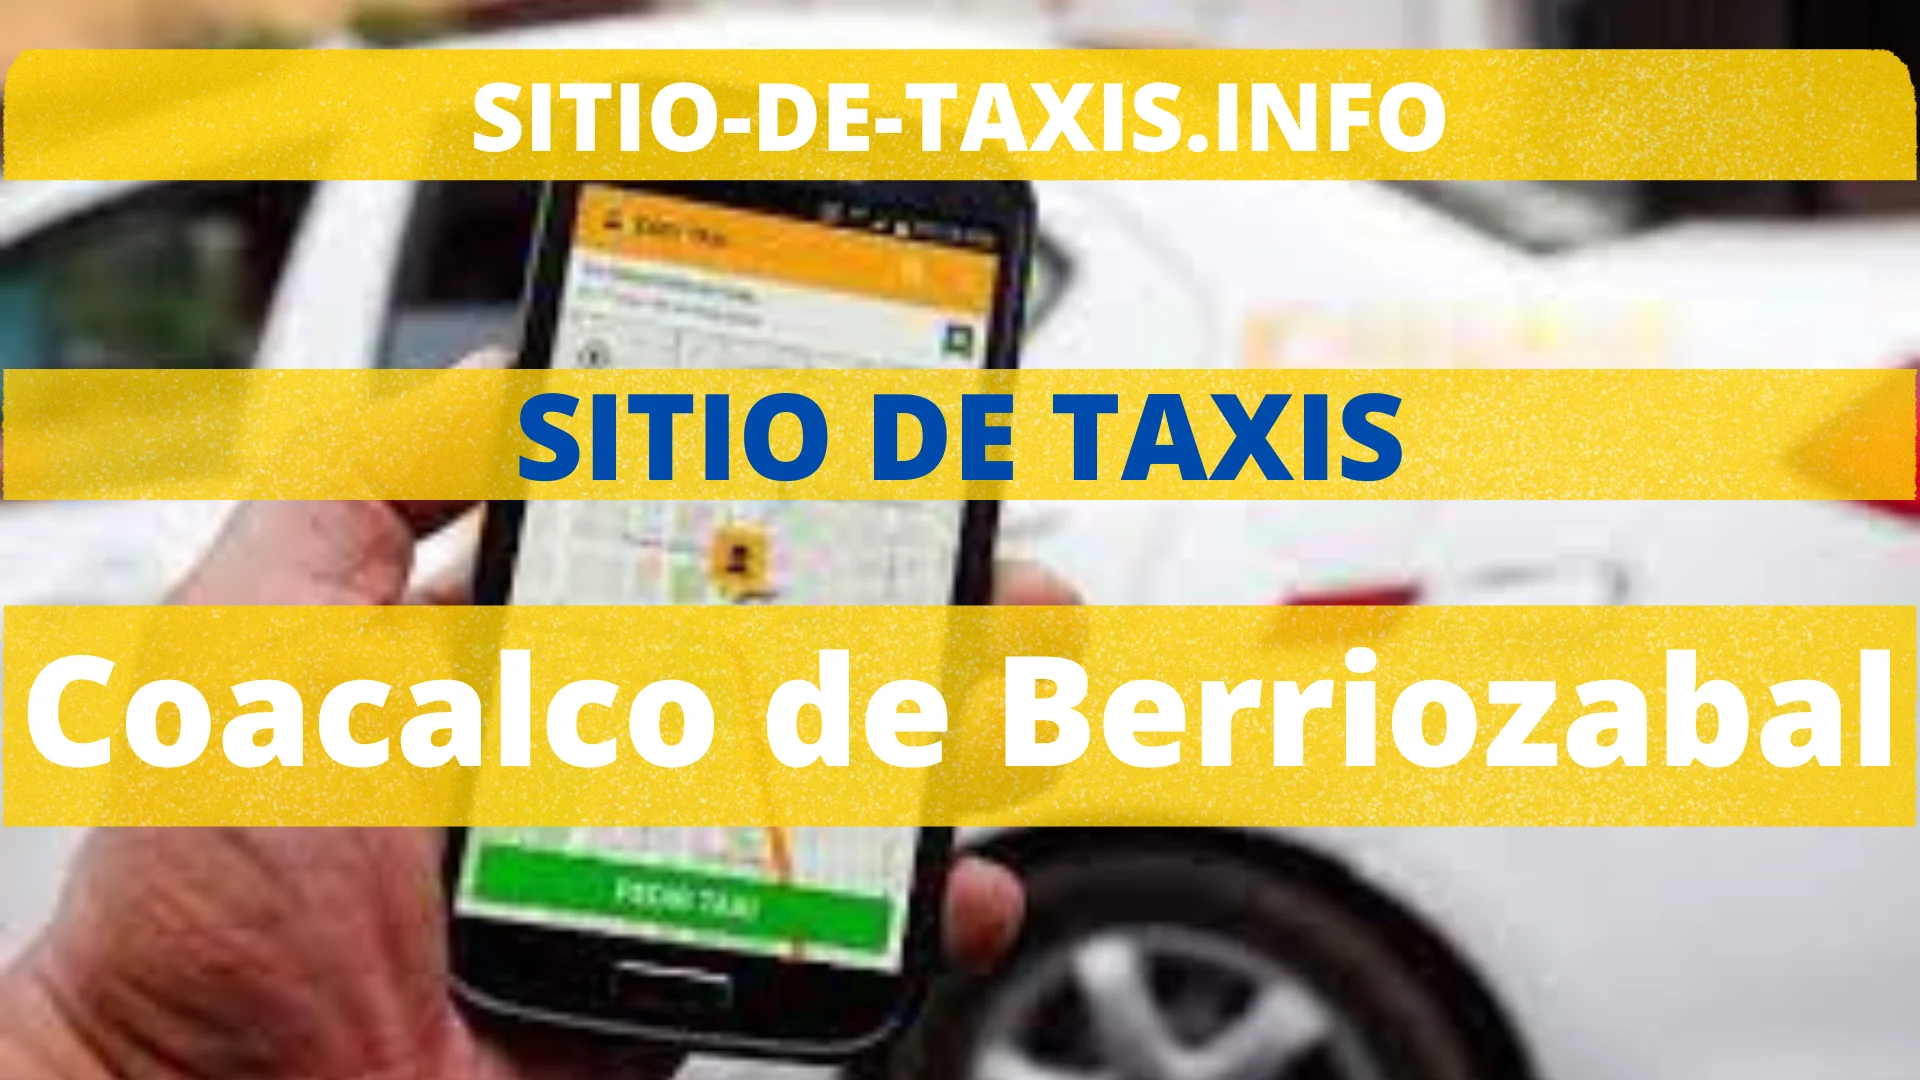 Sitio de Taxis Coacalco de Berriozabal